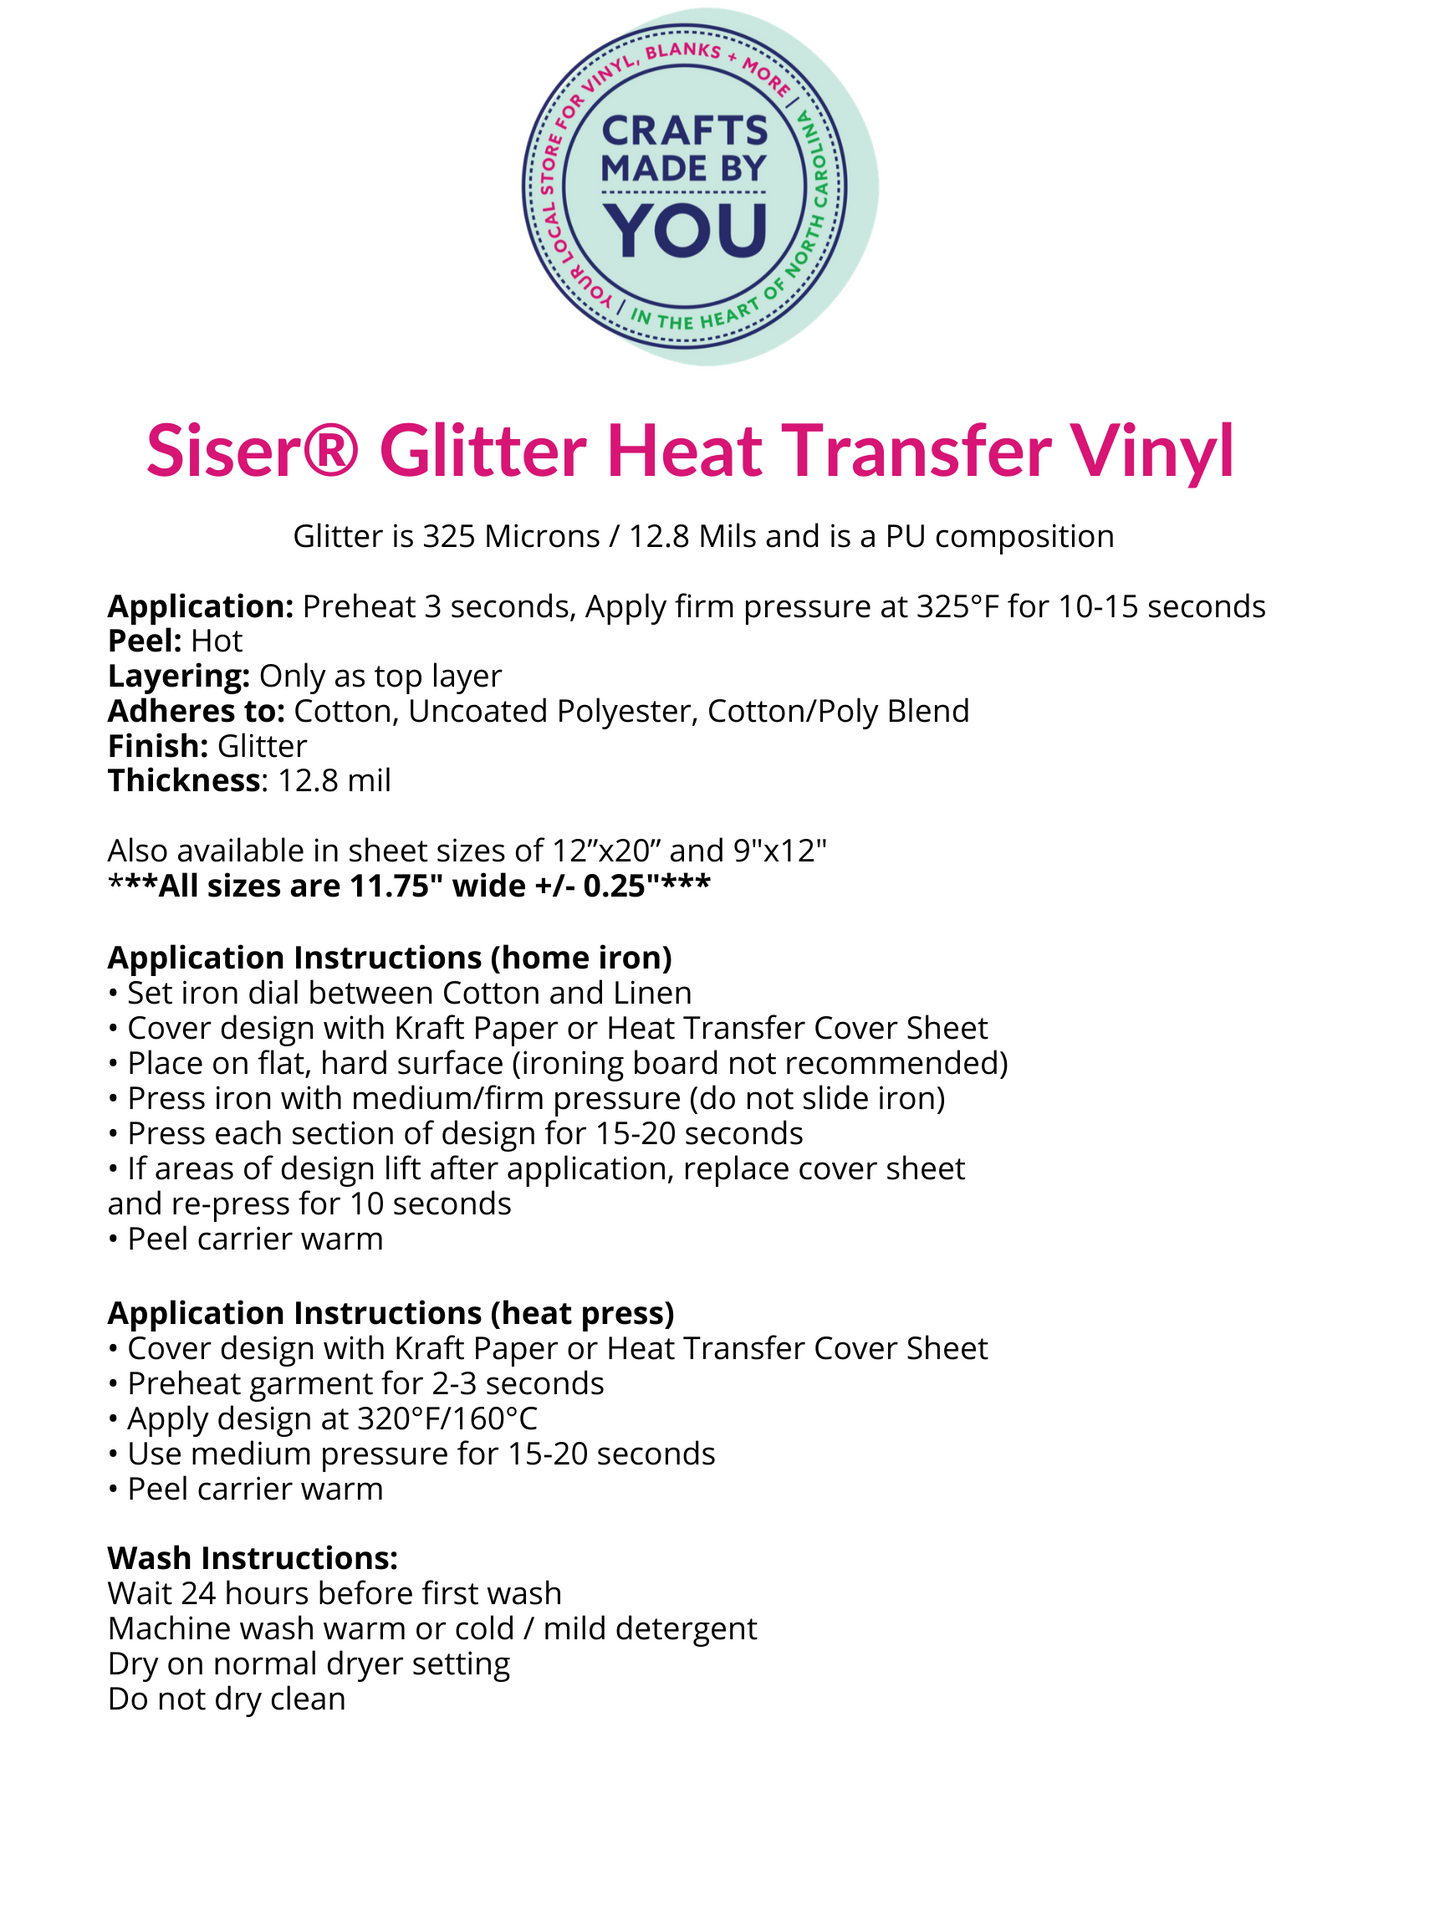 Siser Glitter HTV Sheet - Emerald